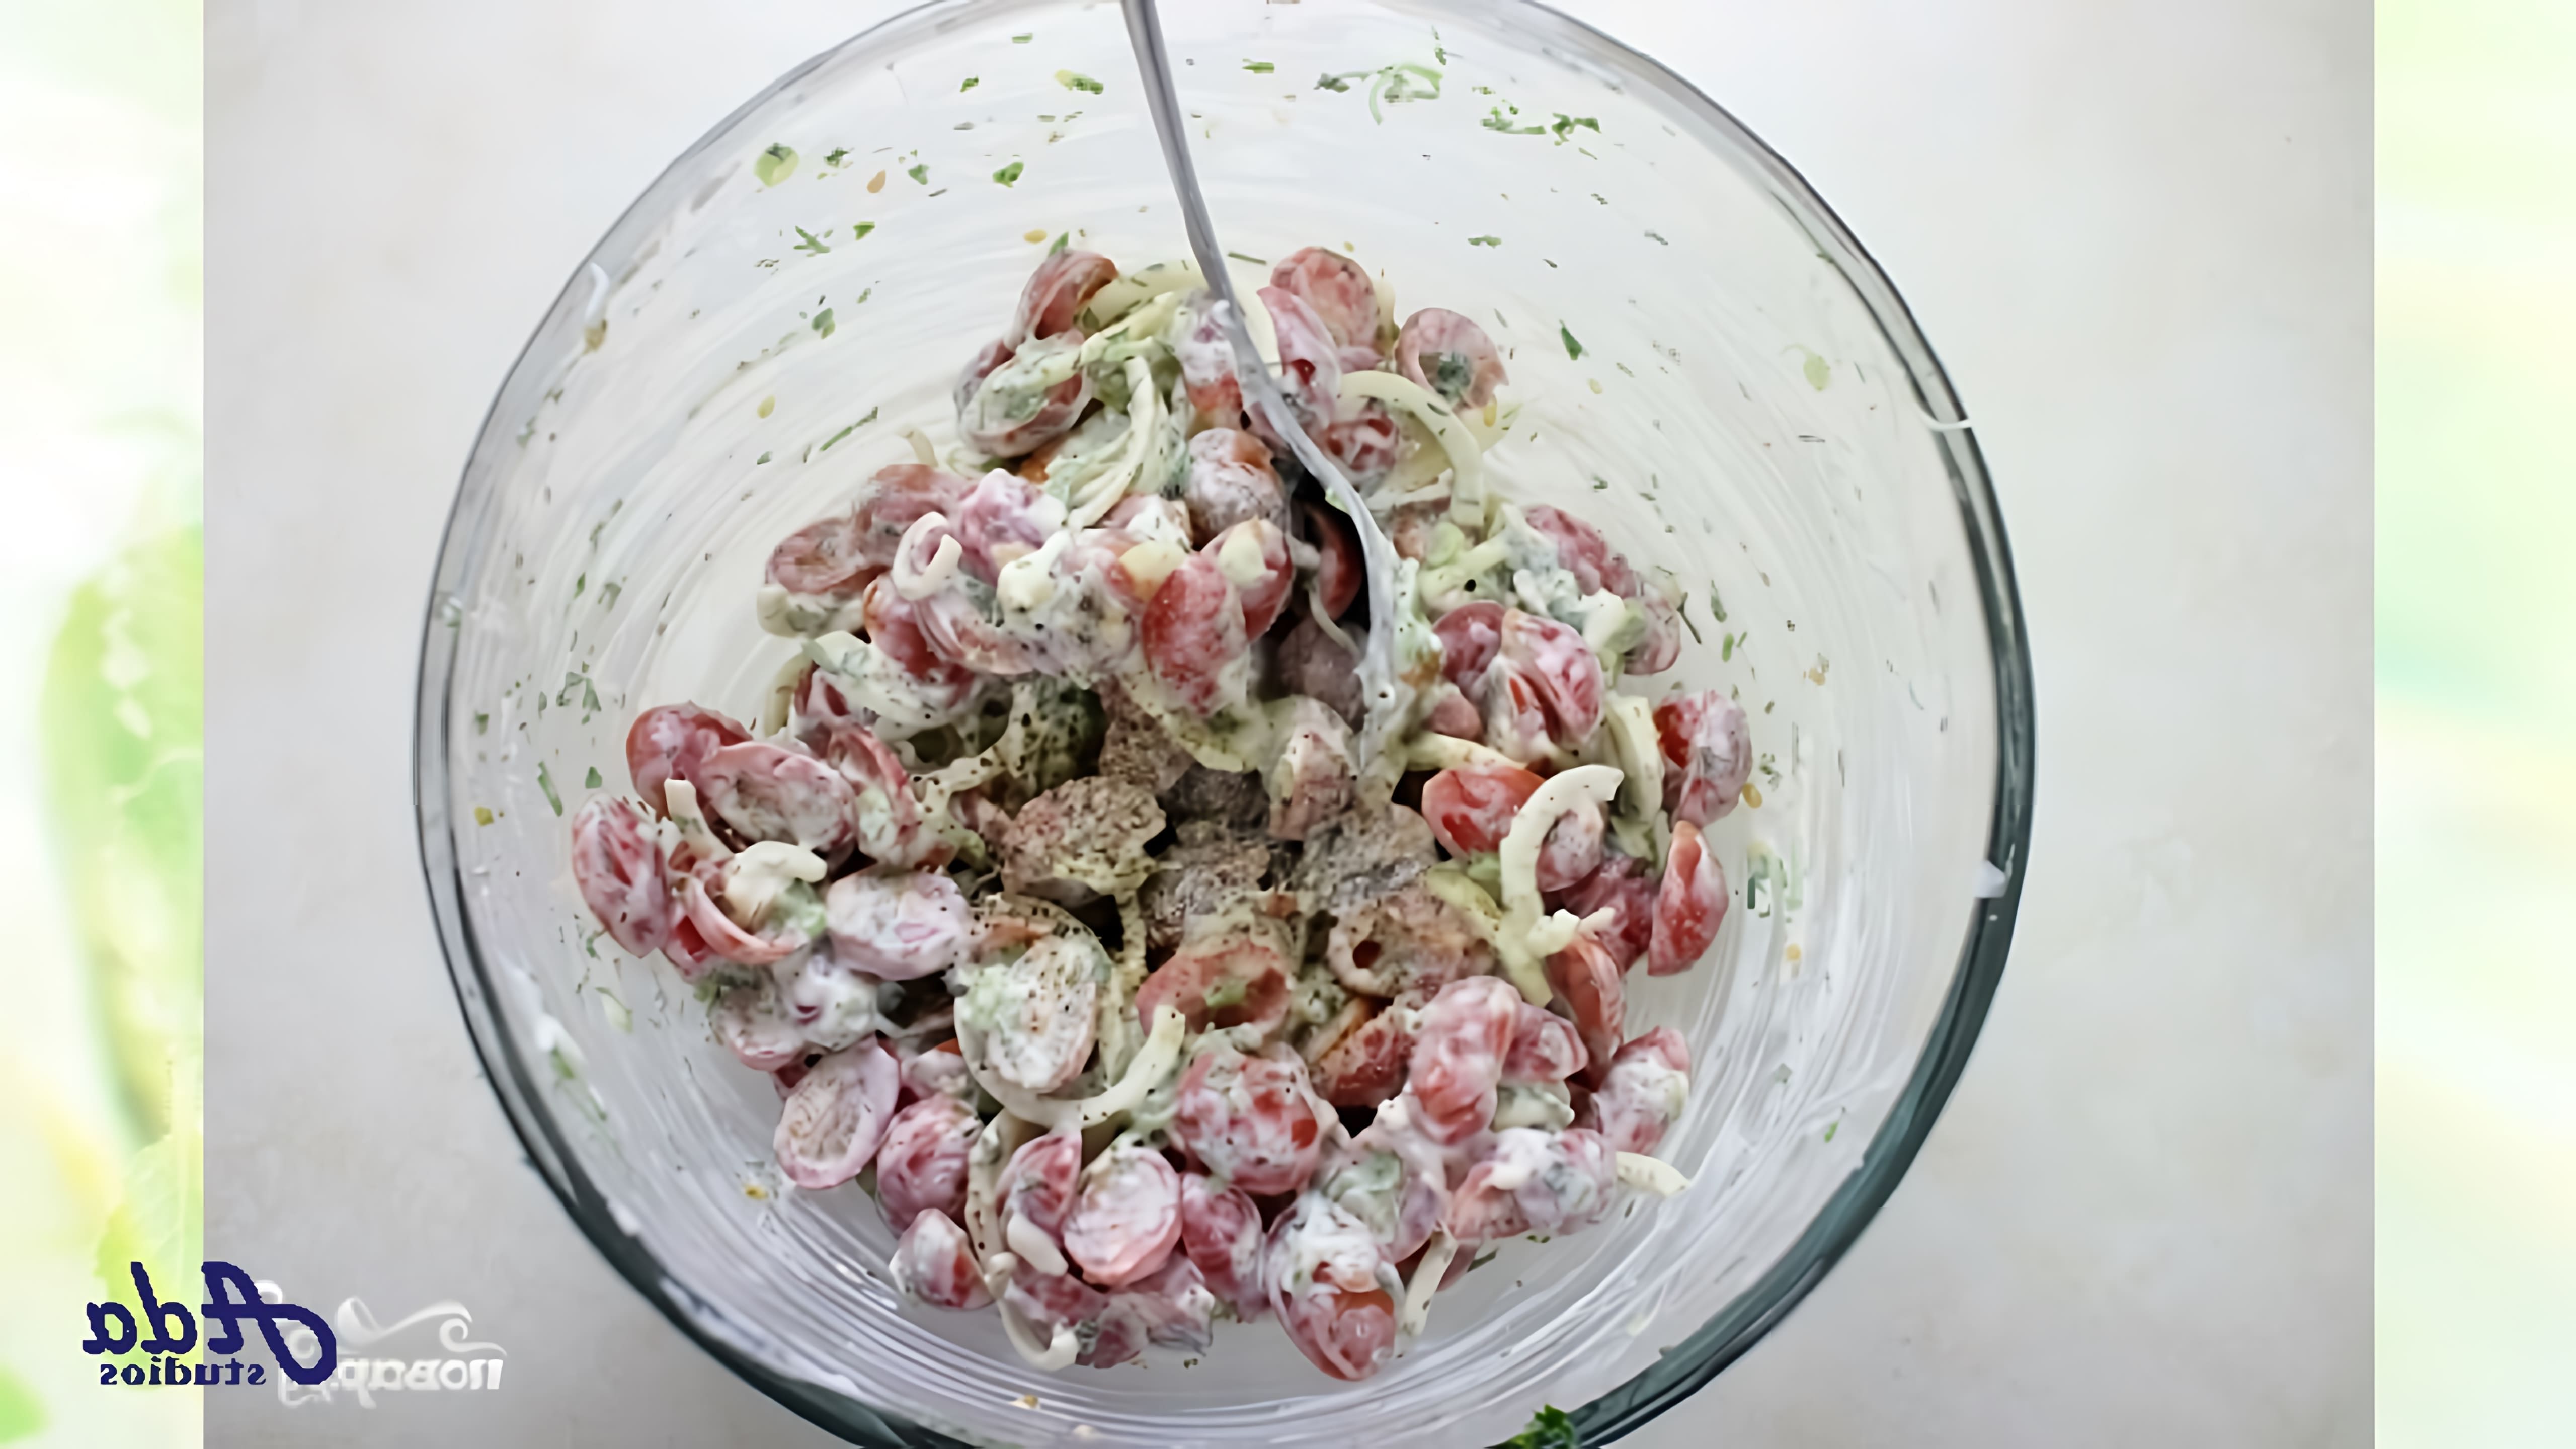 В этом видео демонстрируется рецепт простого и быстрого салата из помидоров со сметаной